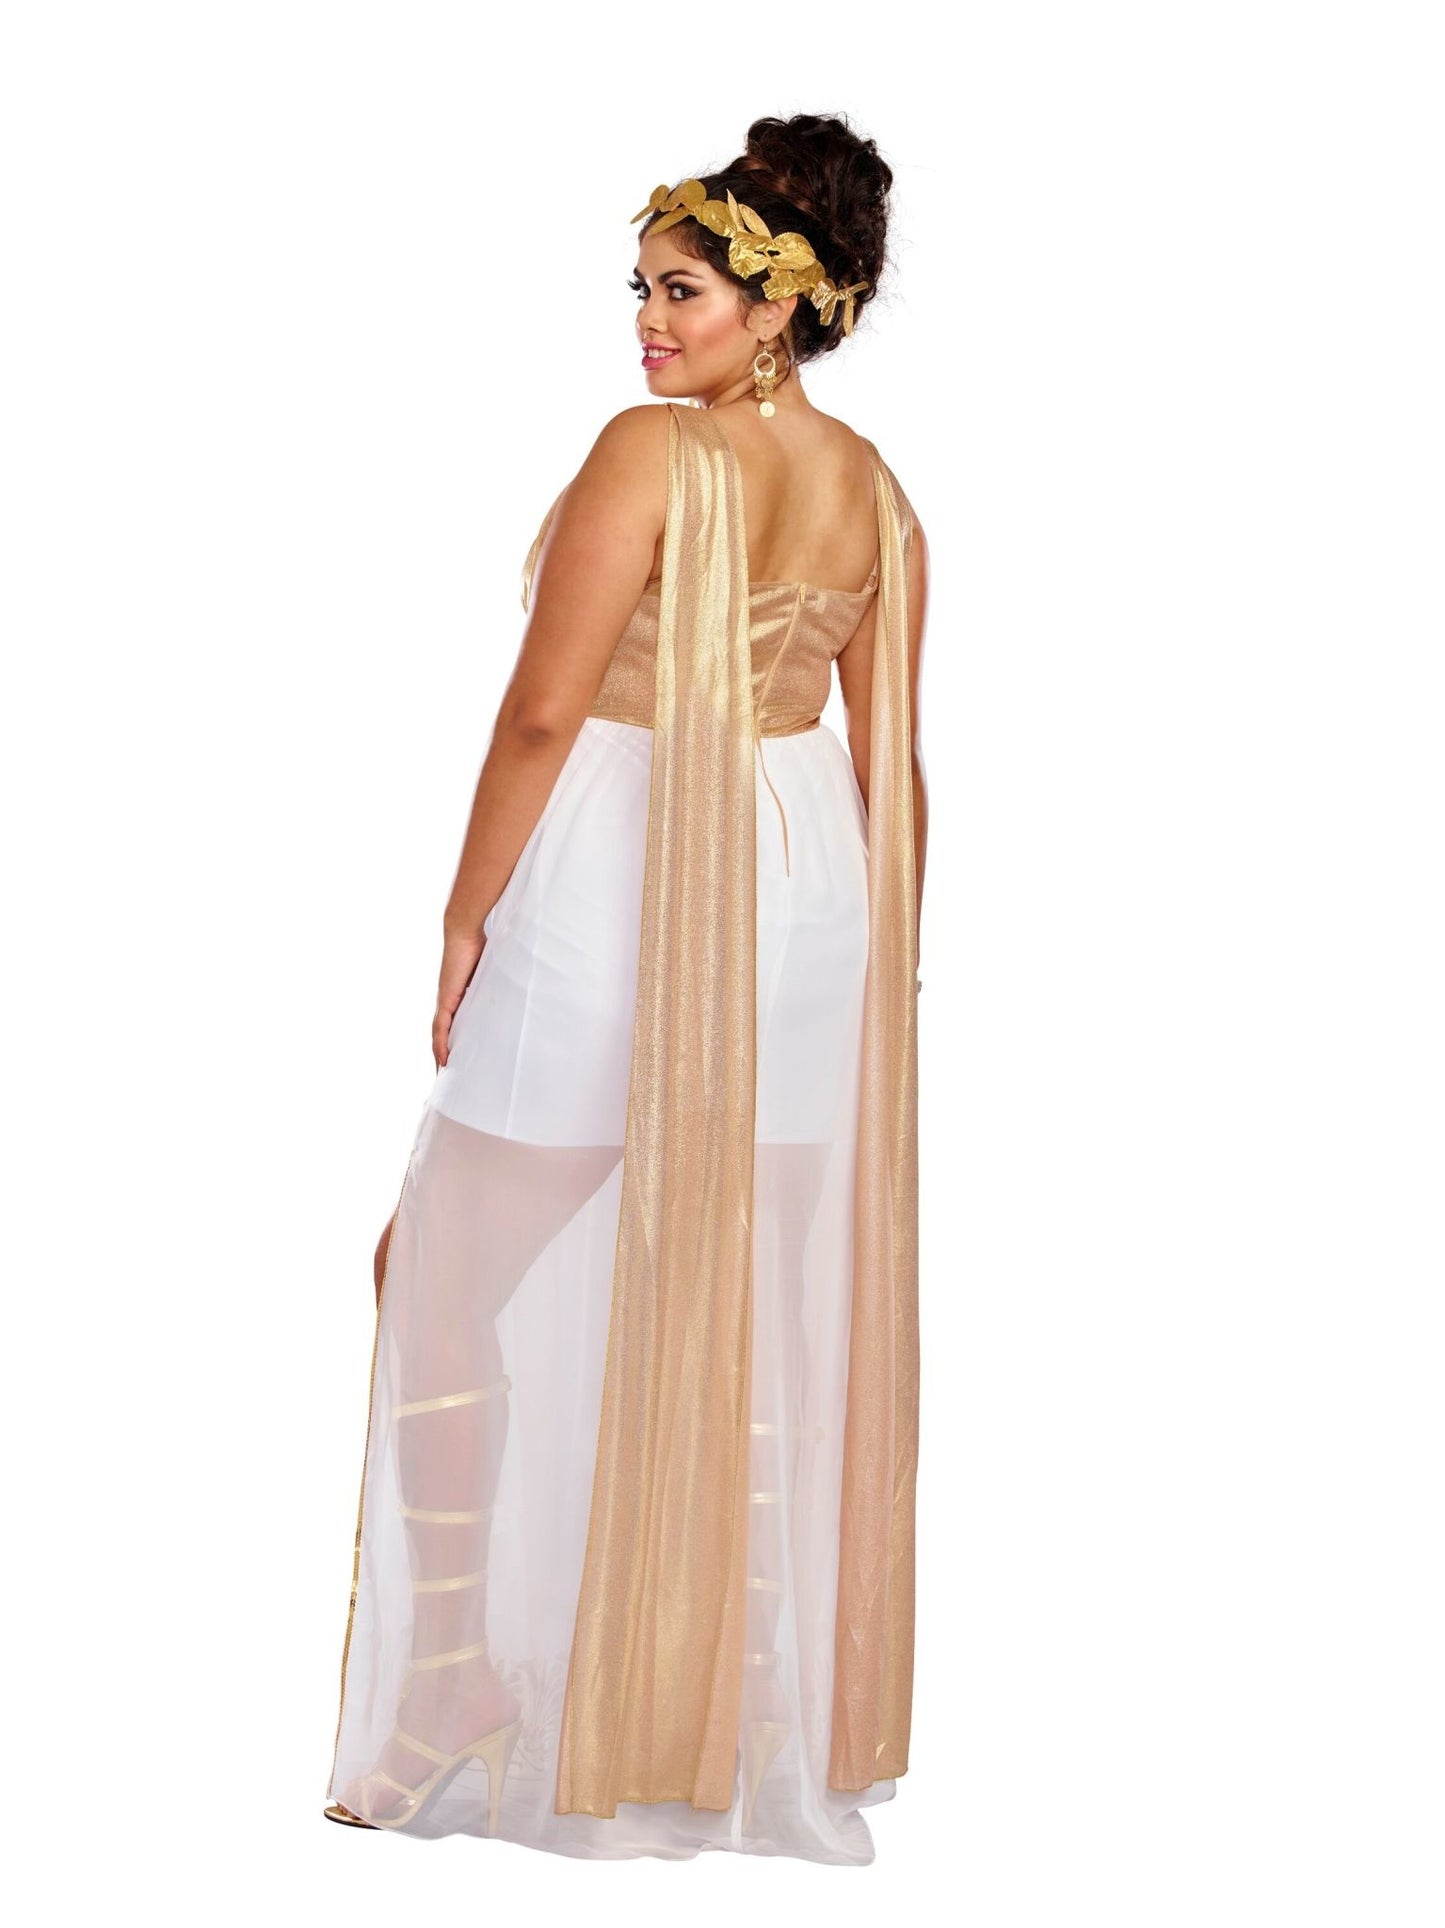 Women's Plus Size Athena Costume